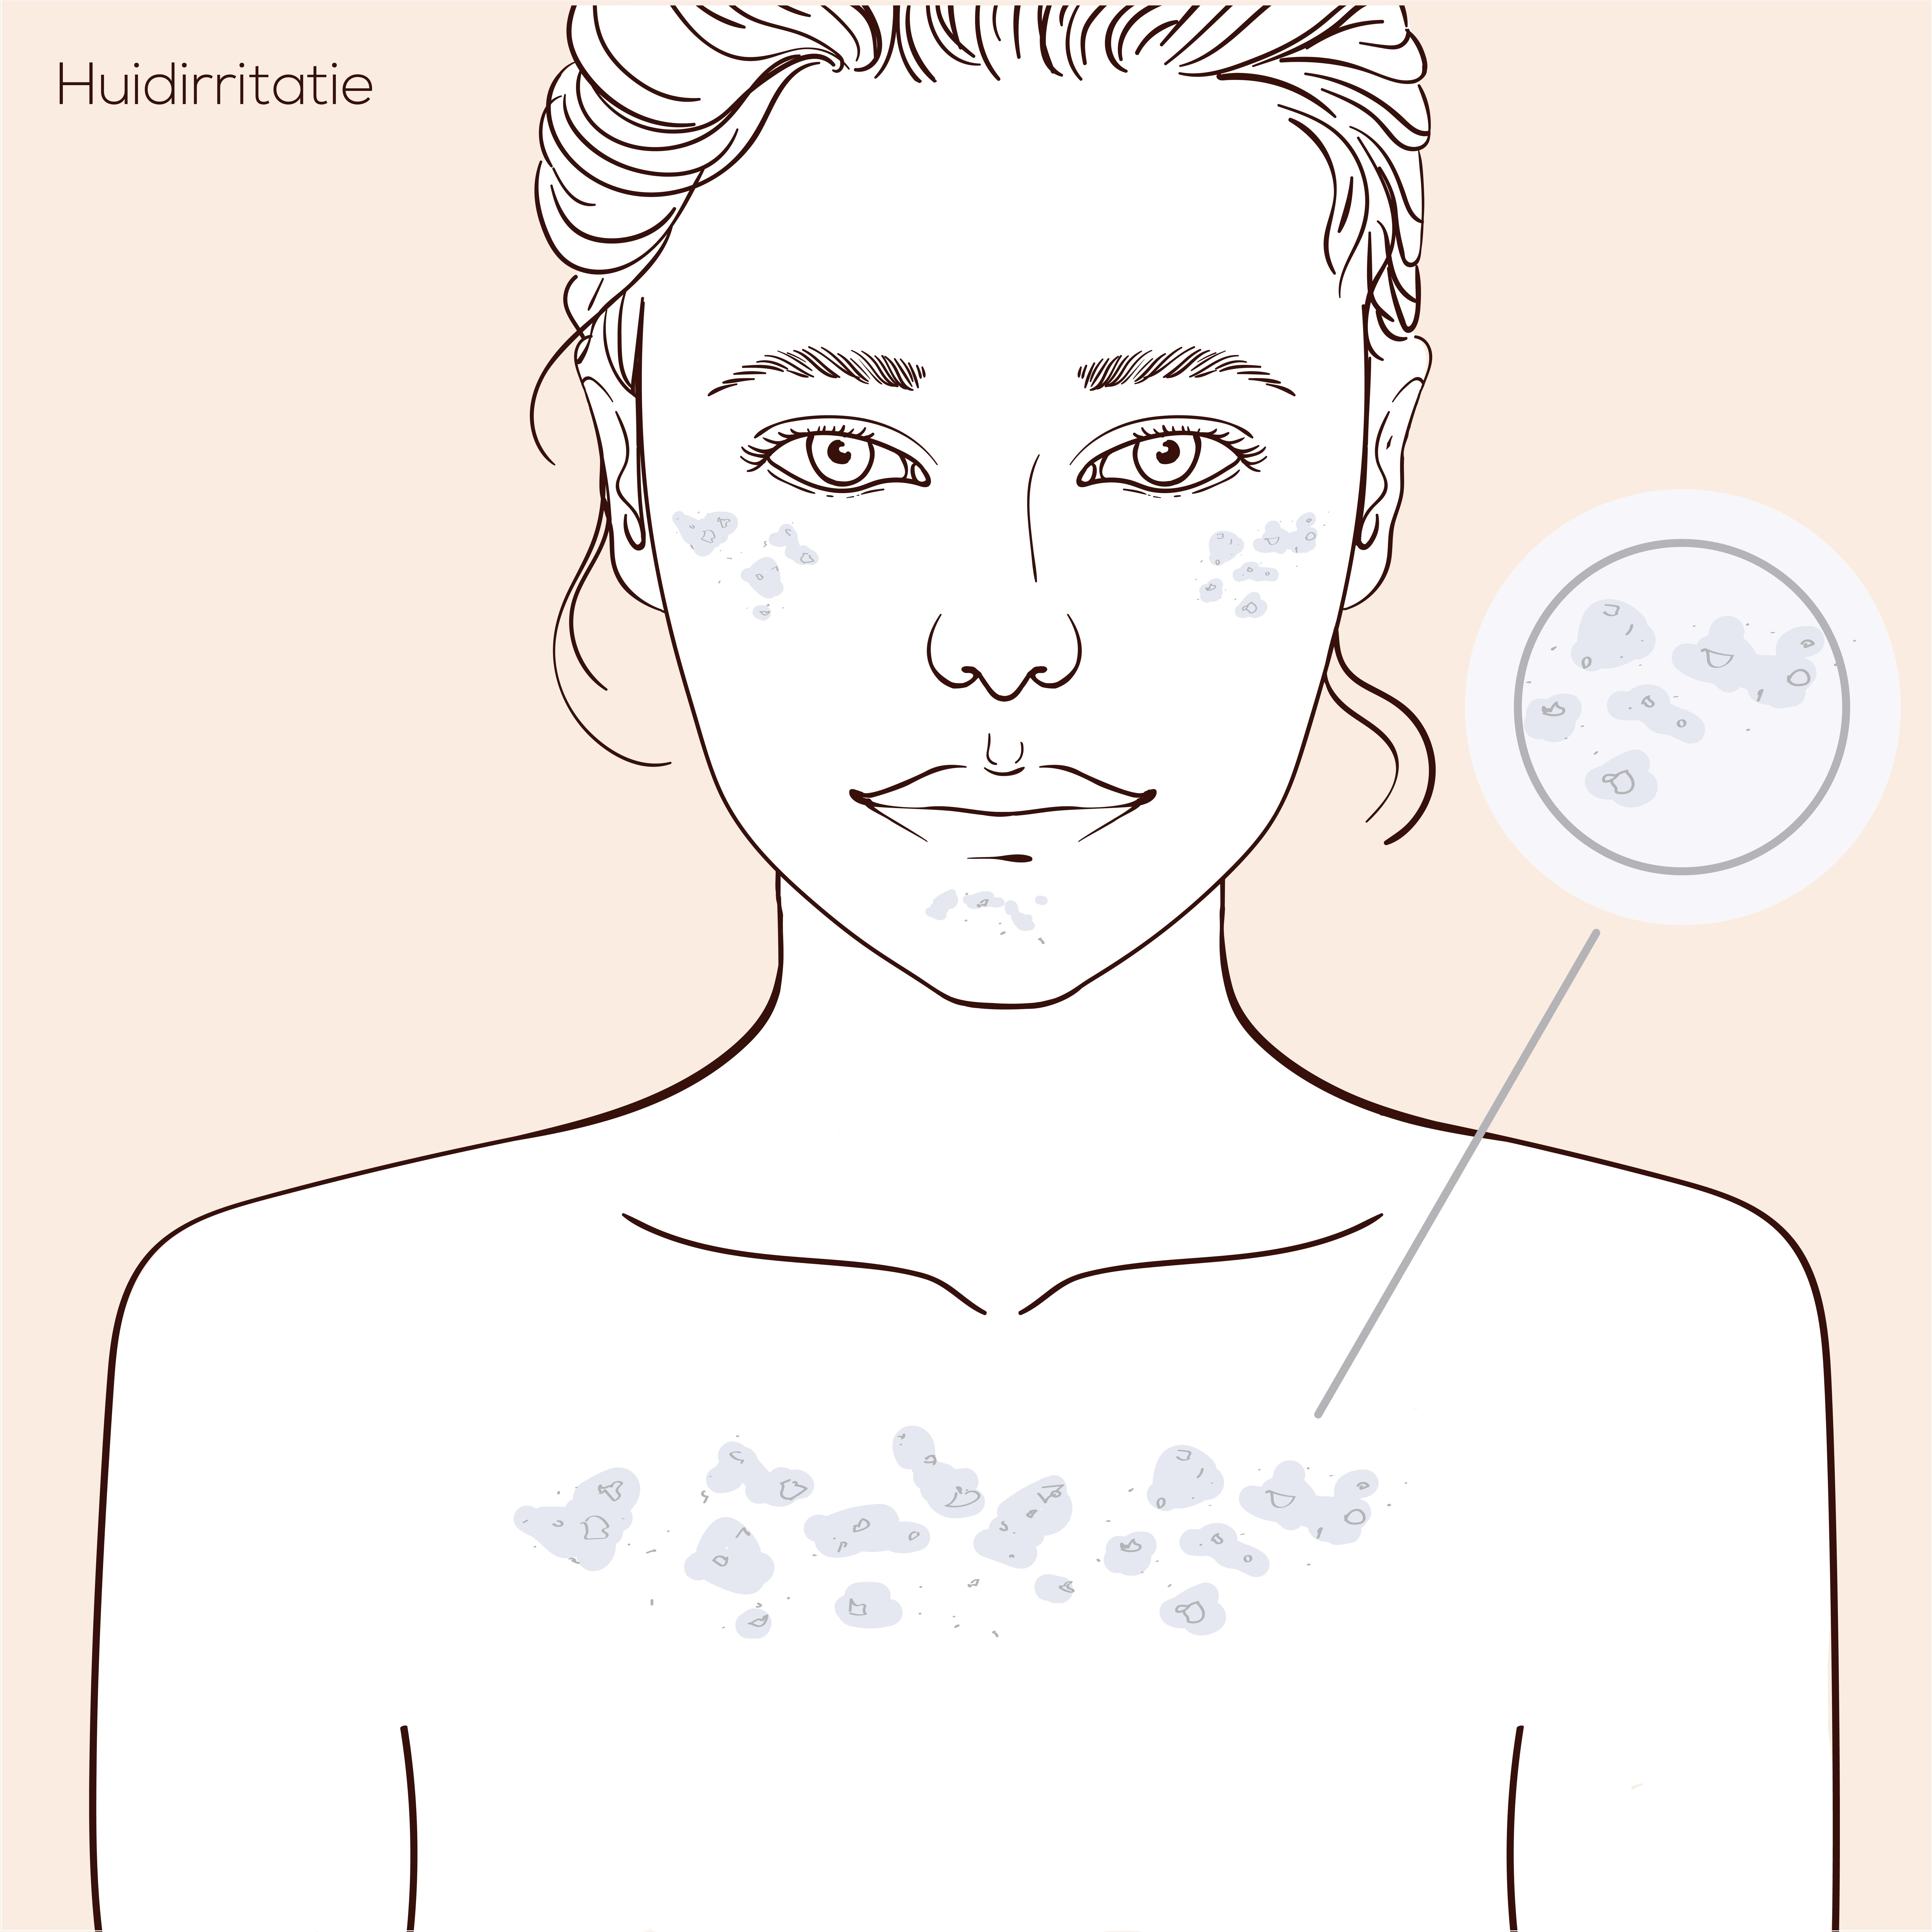 Illustratie van gezicht met huidprobleem huidirritatie